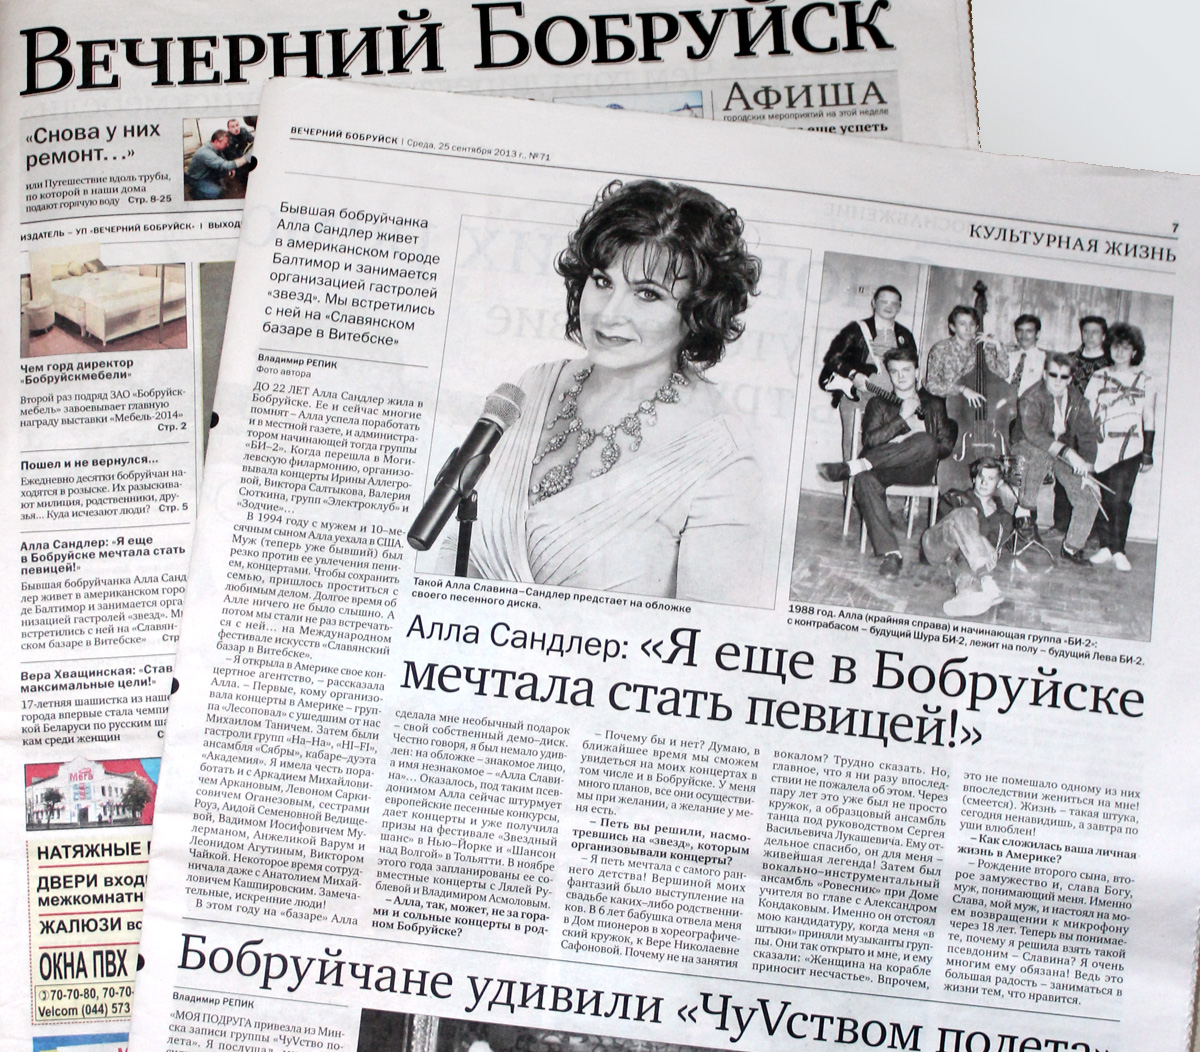 Интервью в газете Вечерний Бобруйск